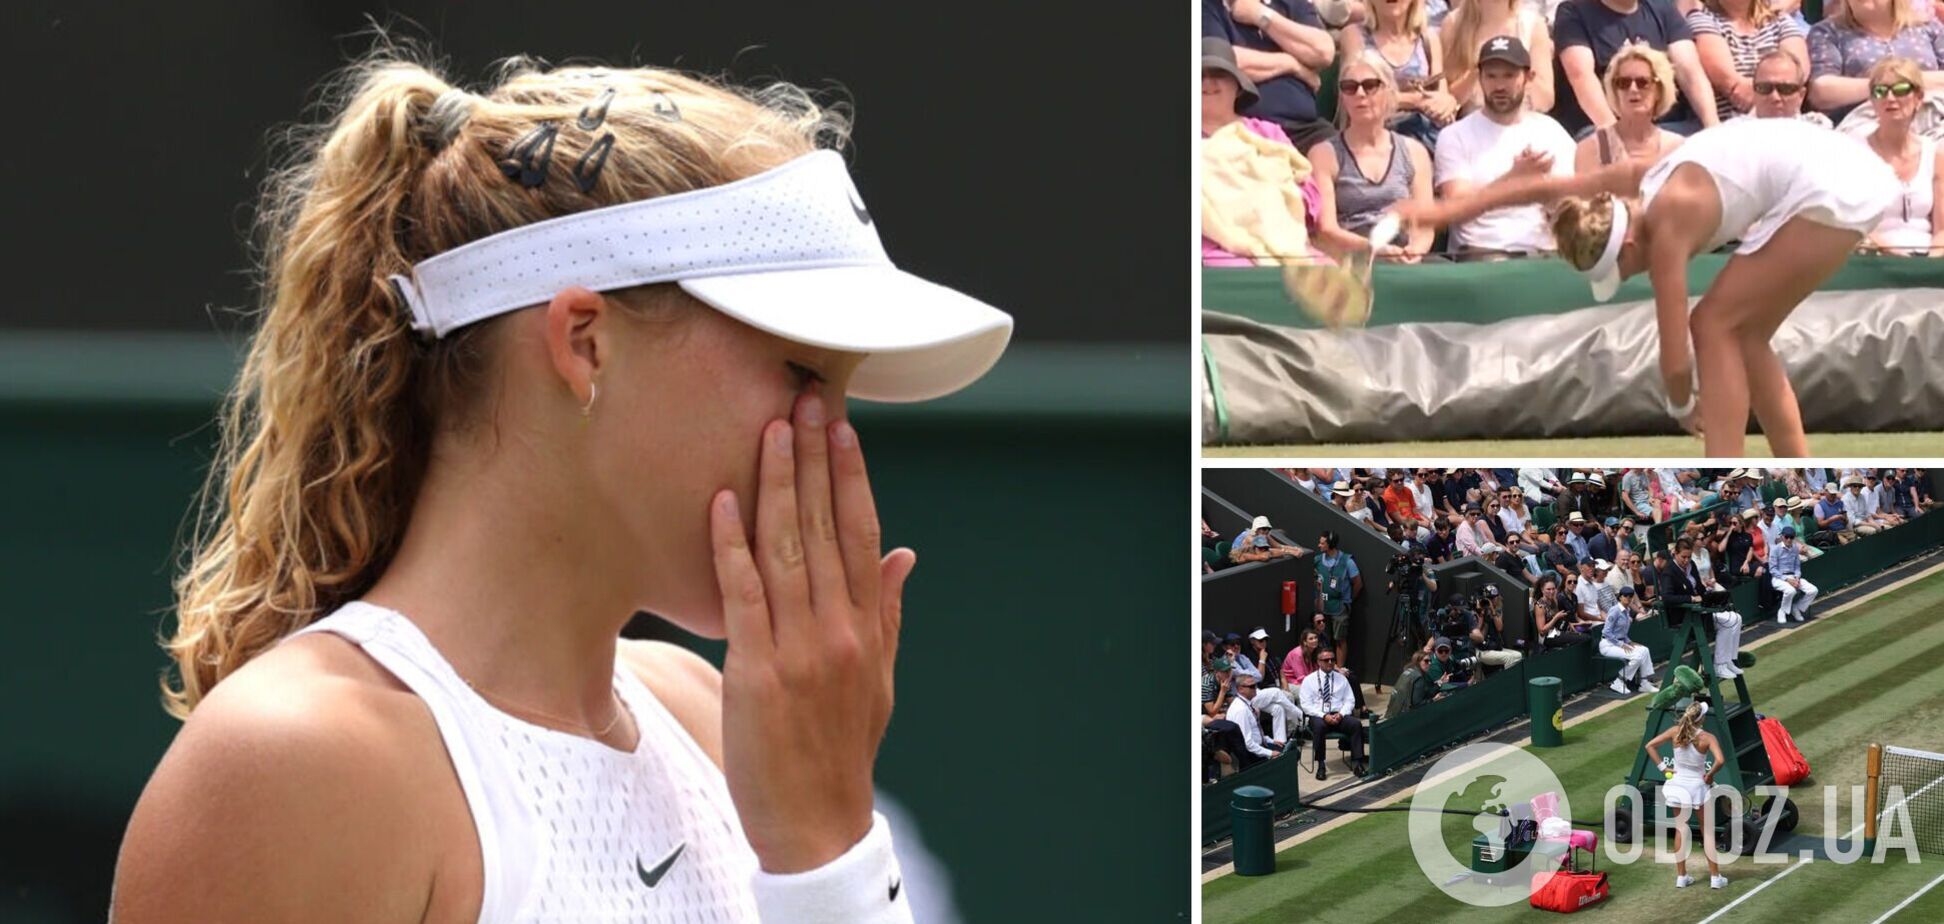 'Я не захотела': российская теннисистка устроила демарш после поражения на Wimbledon. Видео